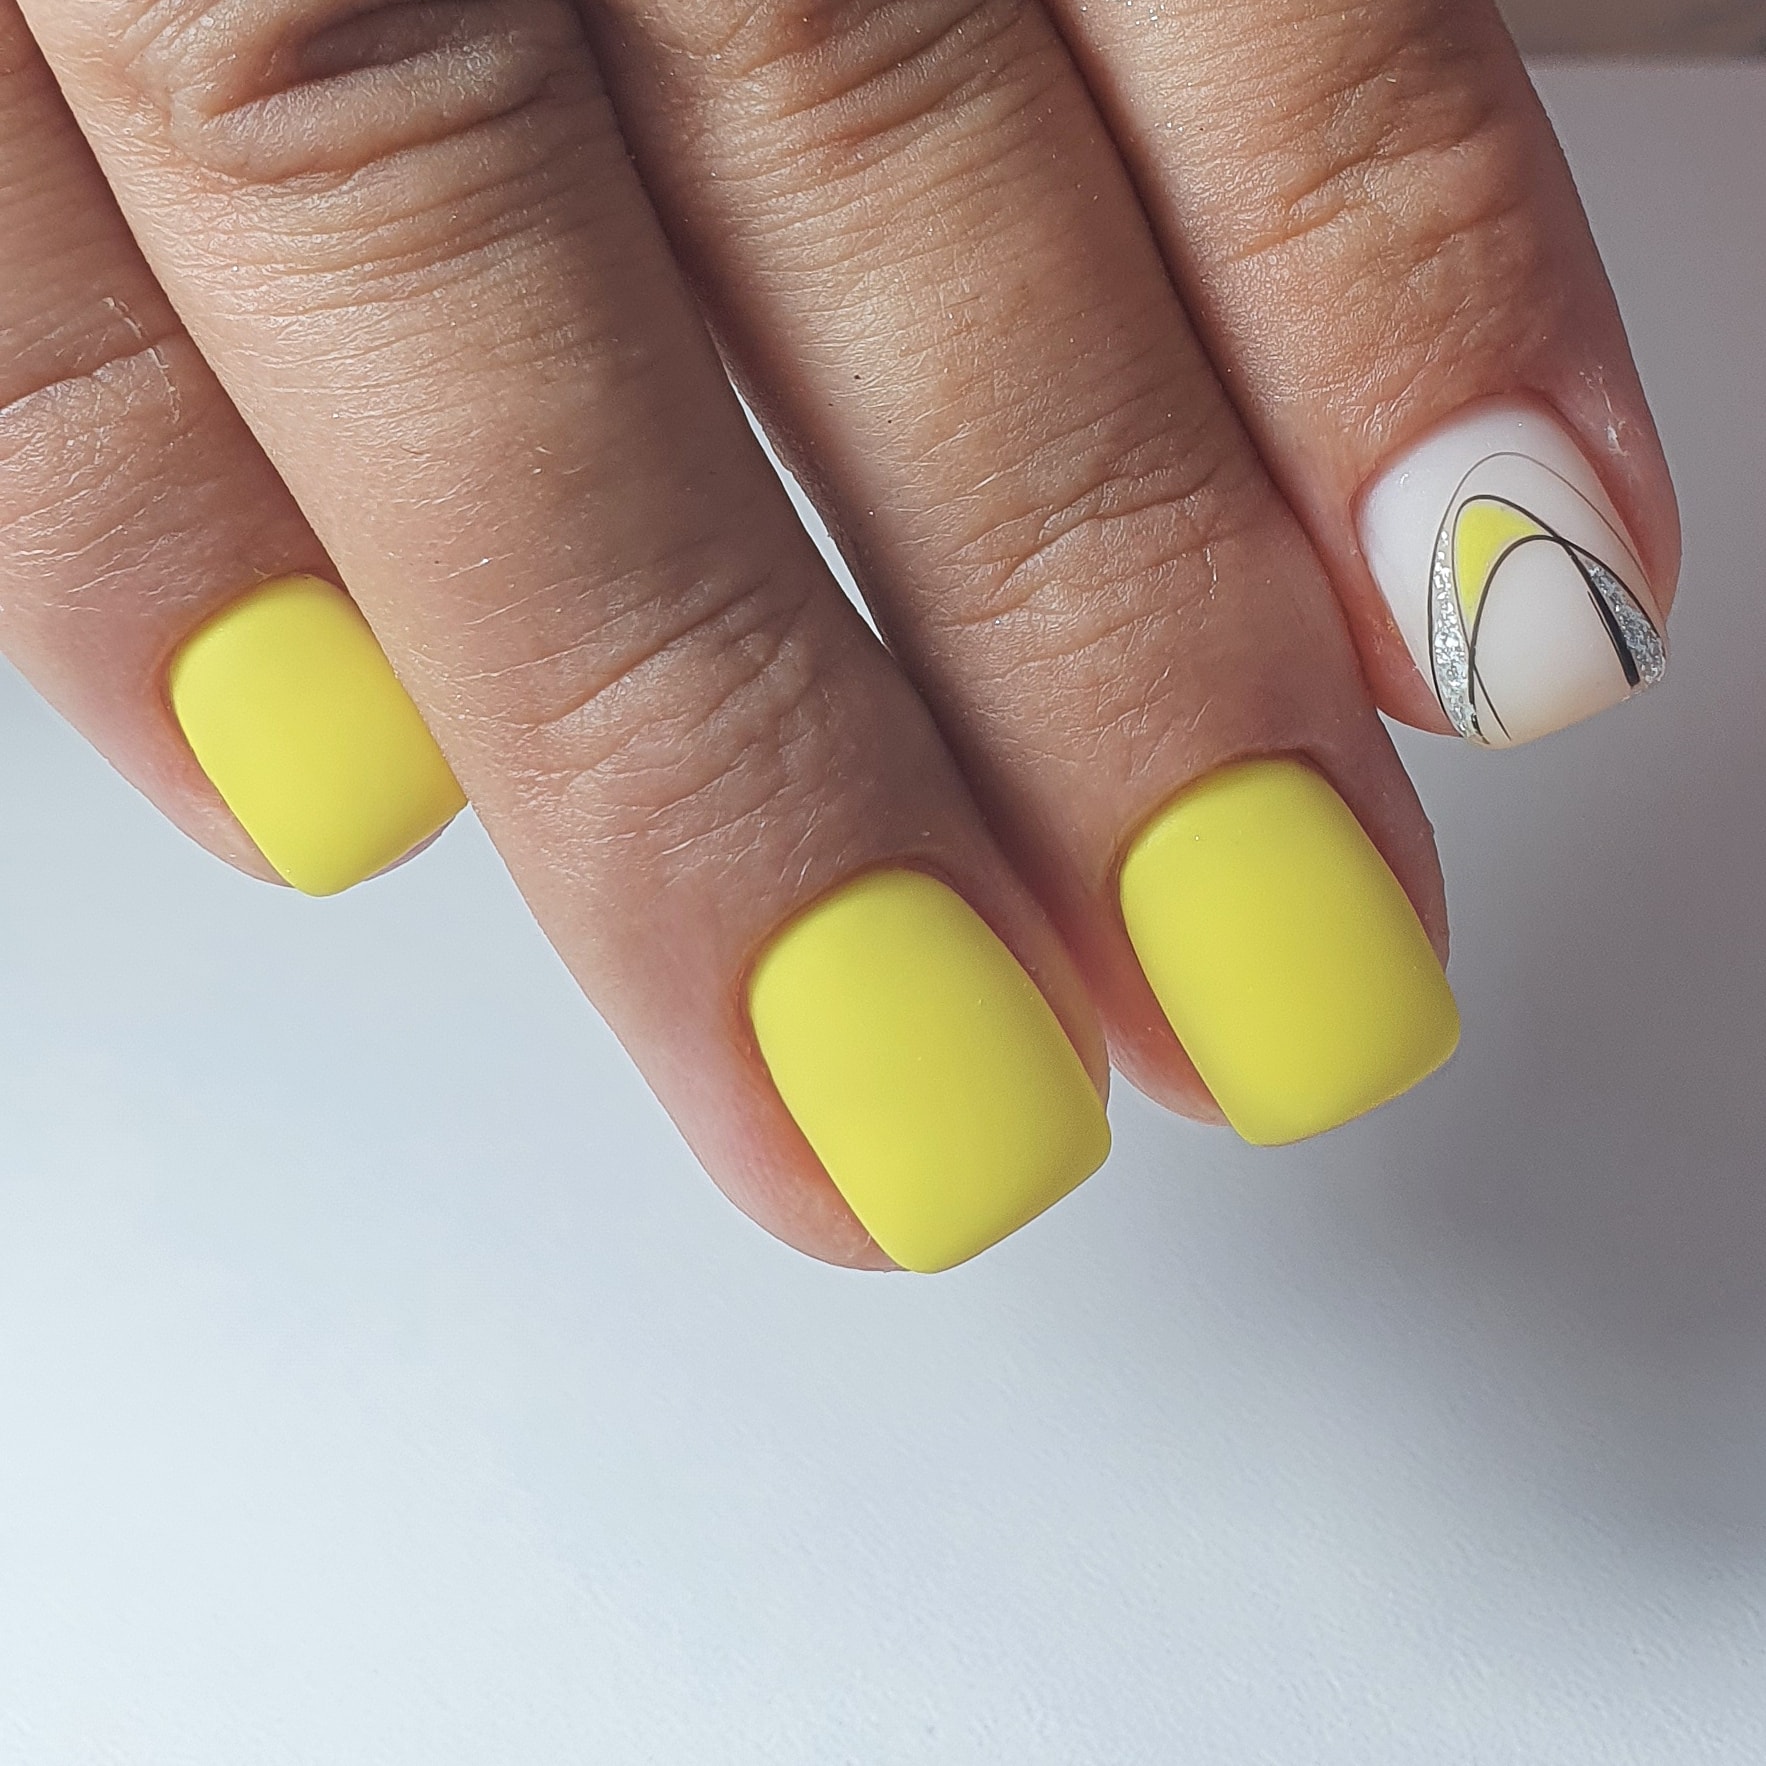 Матовый маникюр с паутинкой и блестками в желтом цвете на короткие ногти.